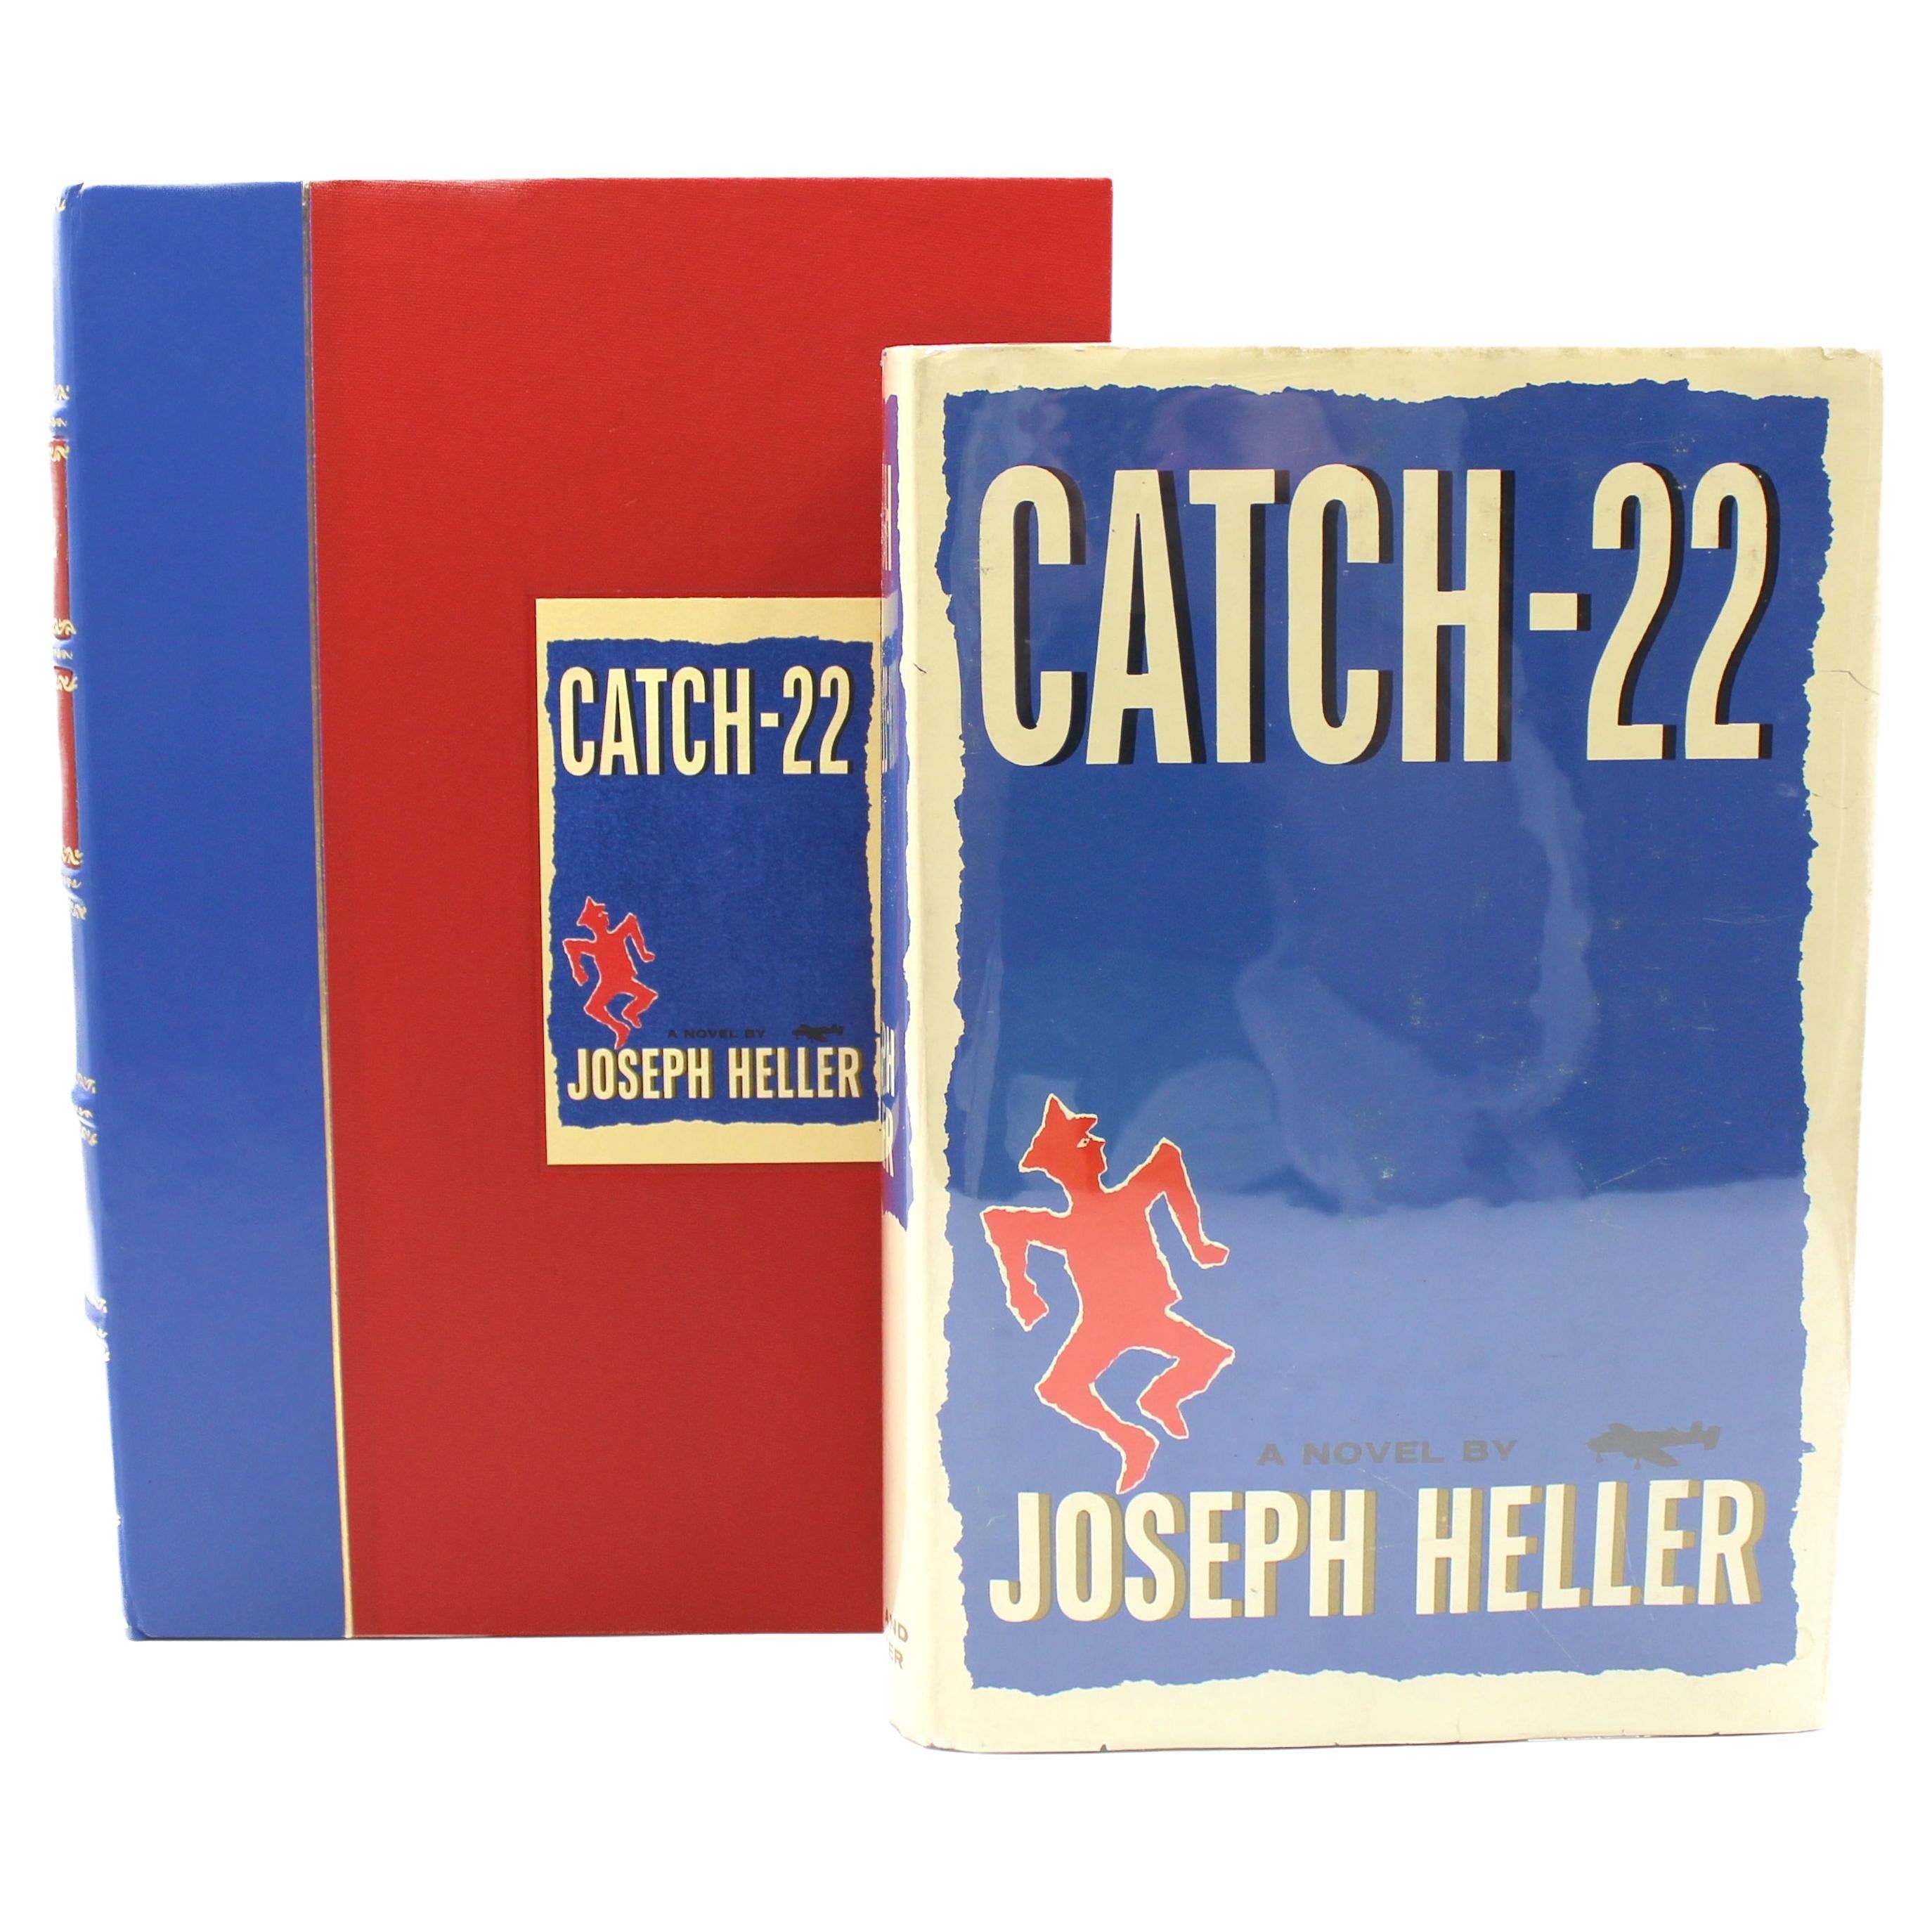 Catch-22 von Joseph Heller, Erstausgabe, Erstdruck, im Original DJ, 1961